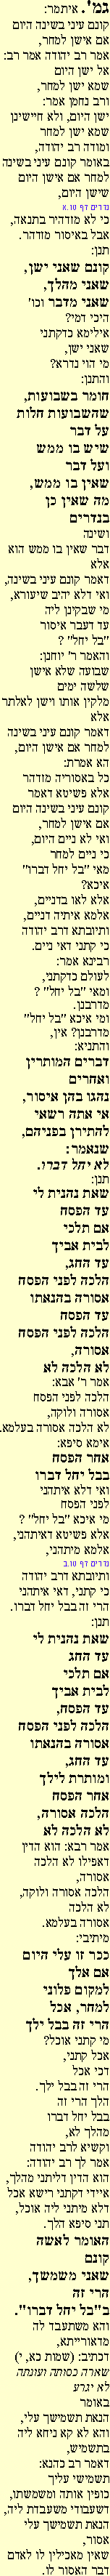 Ghemara 15ab